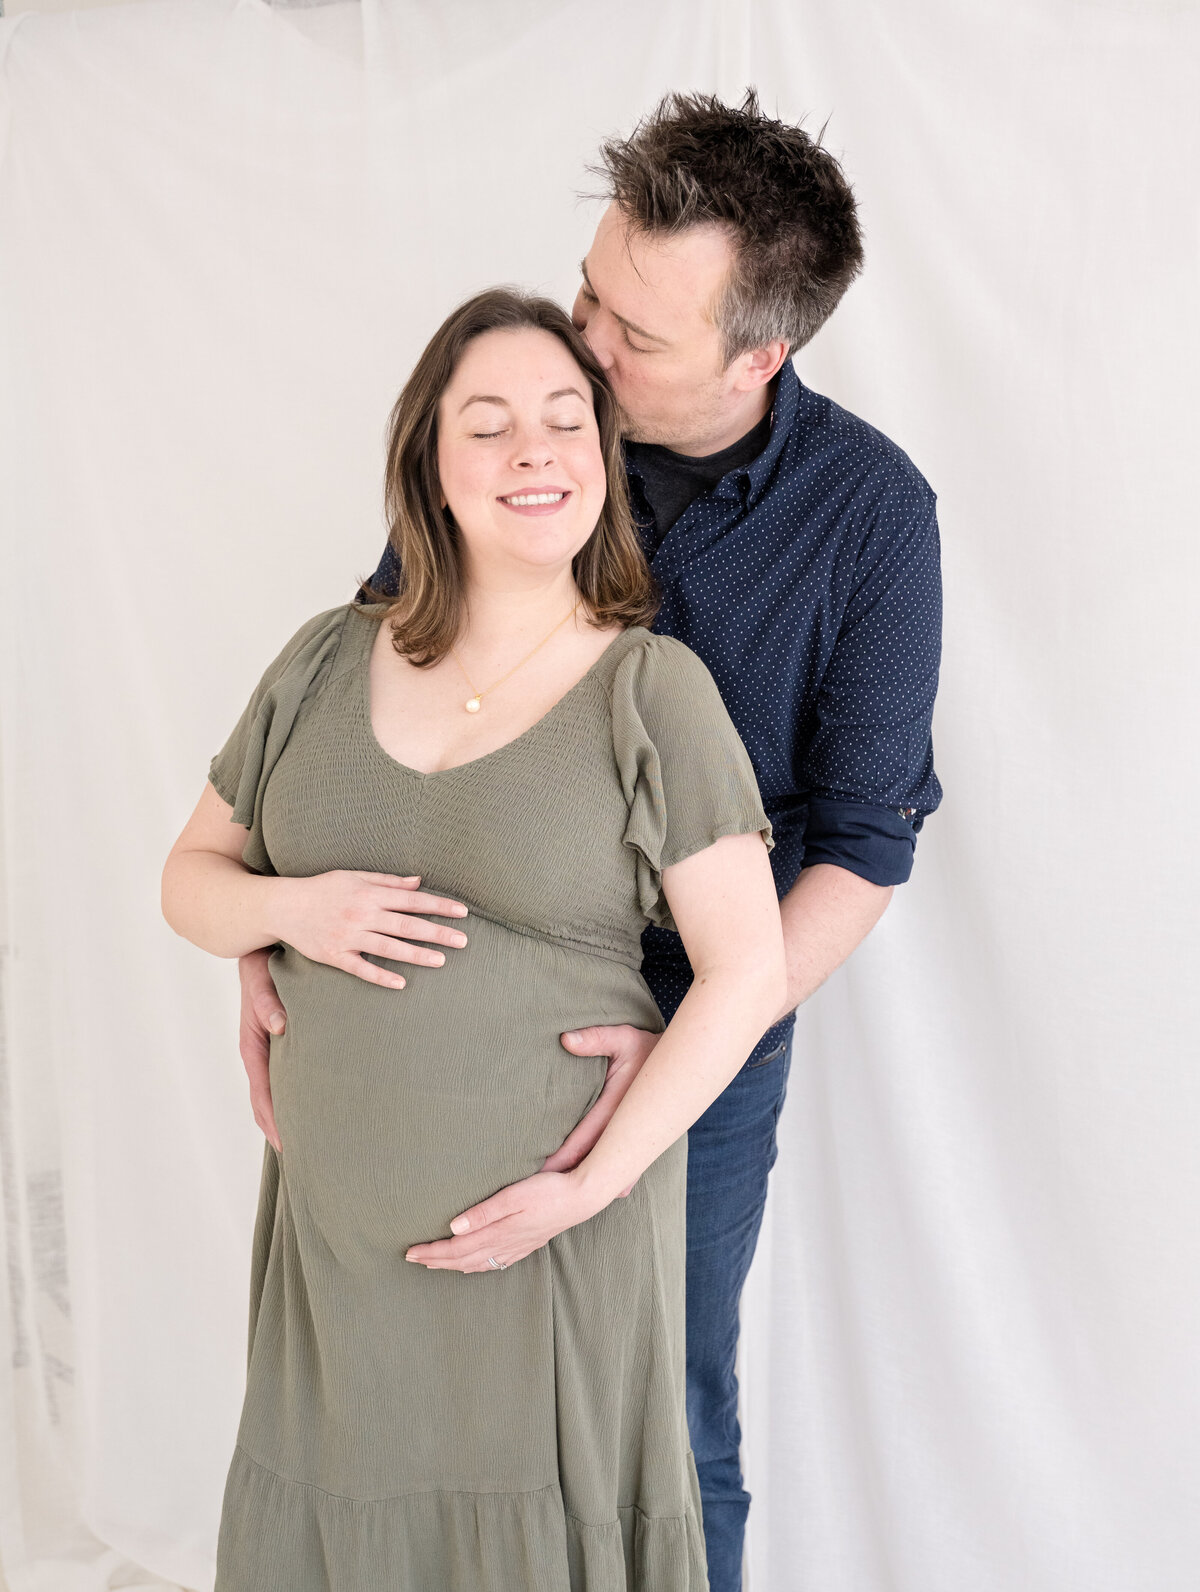 Maternity Photoshoot in Stamford, CT studio